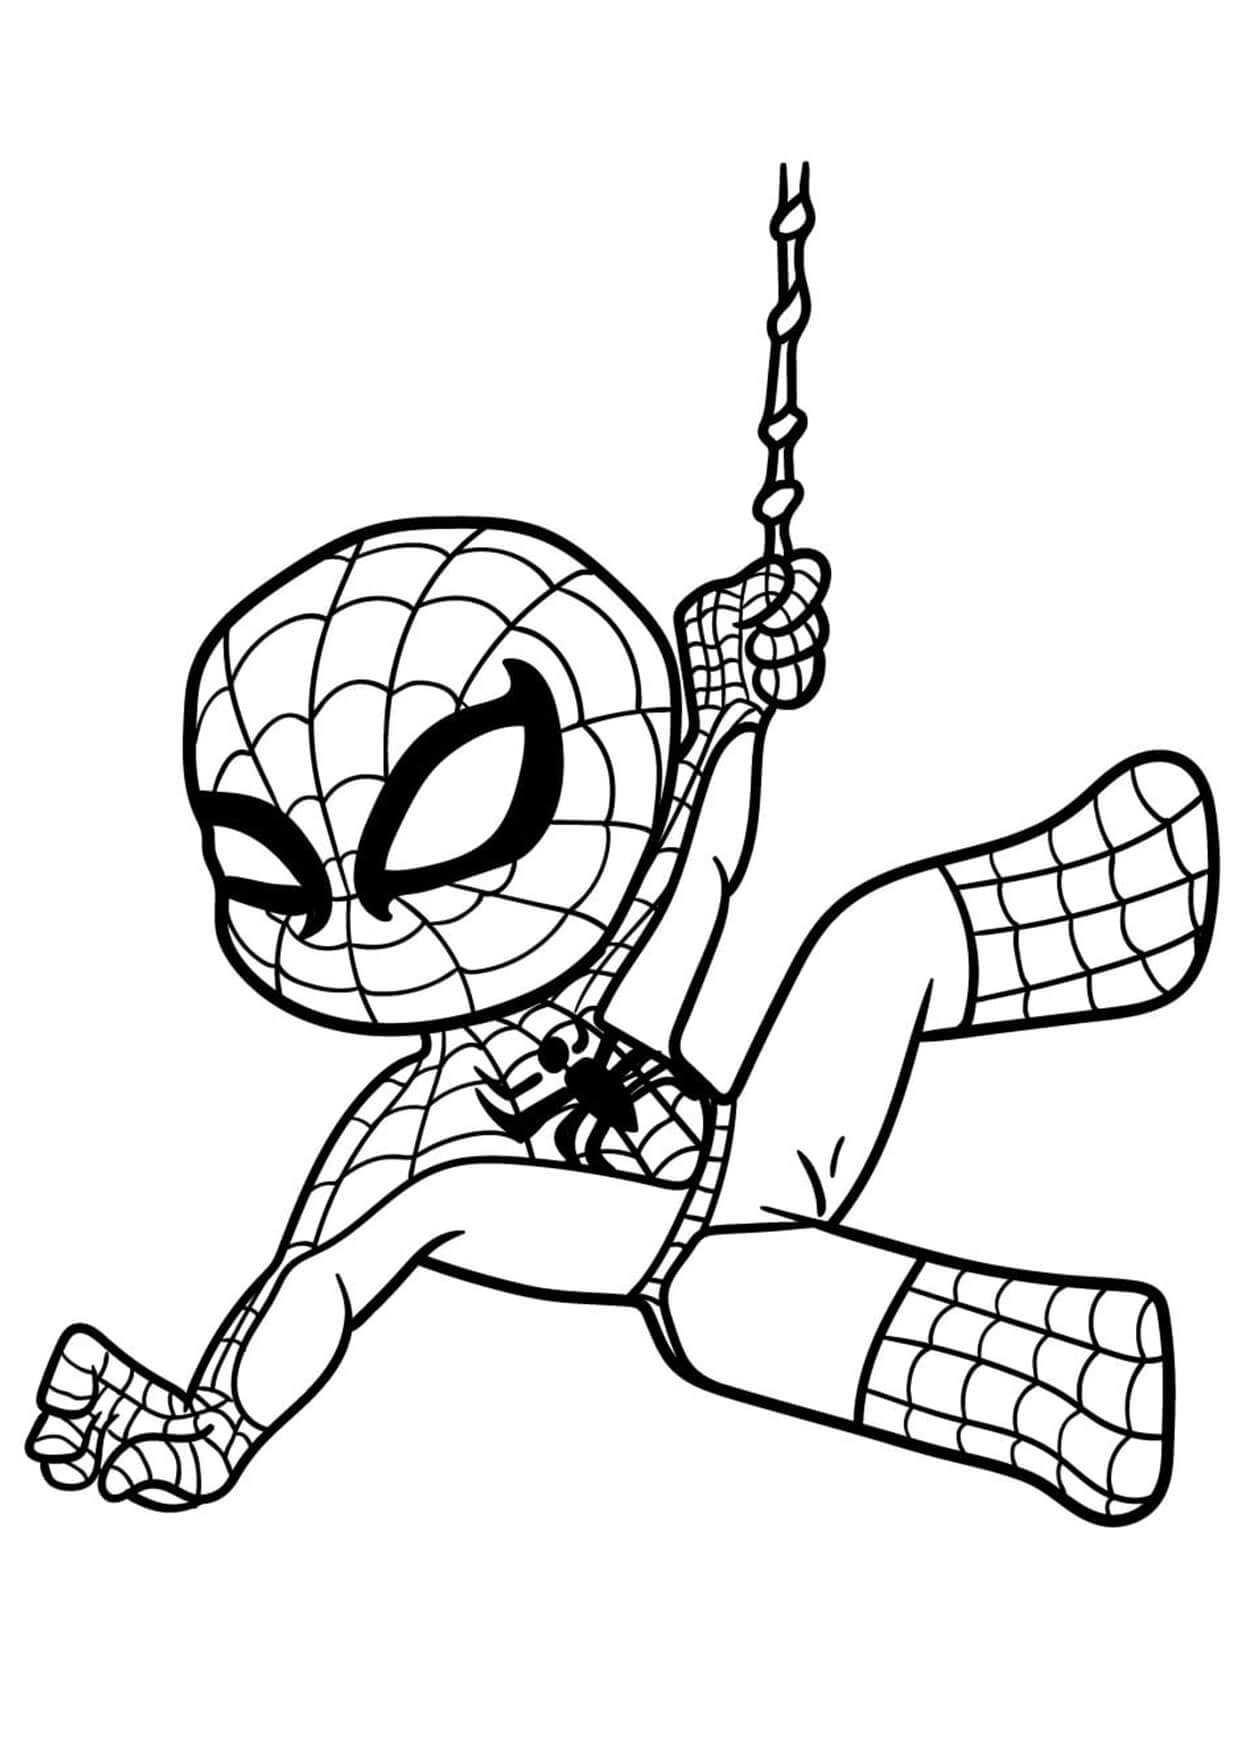 Spider-Man Mignon coloring page